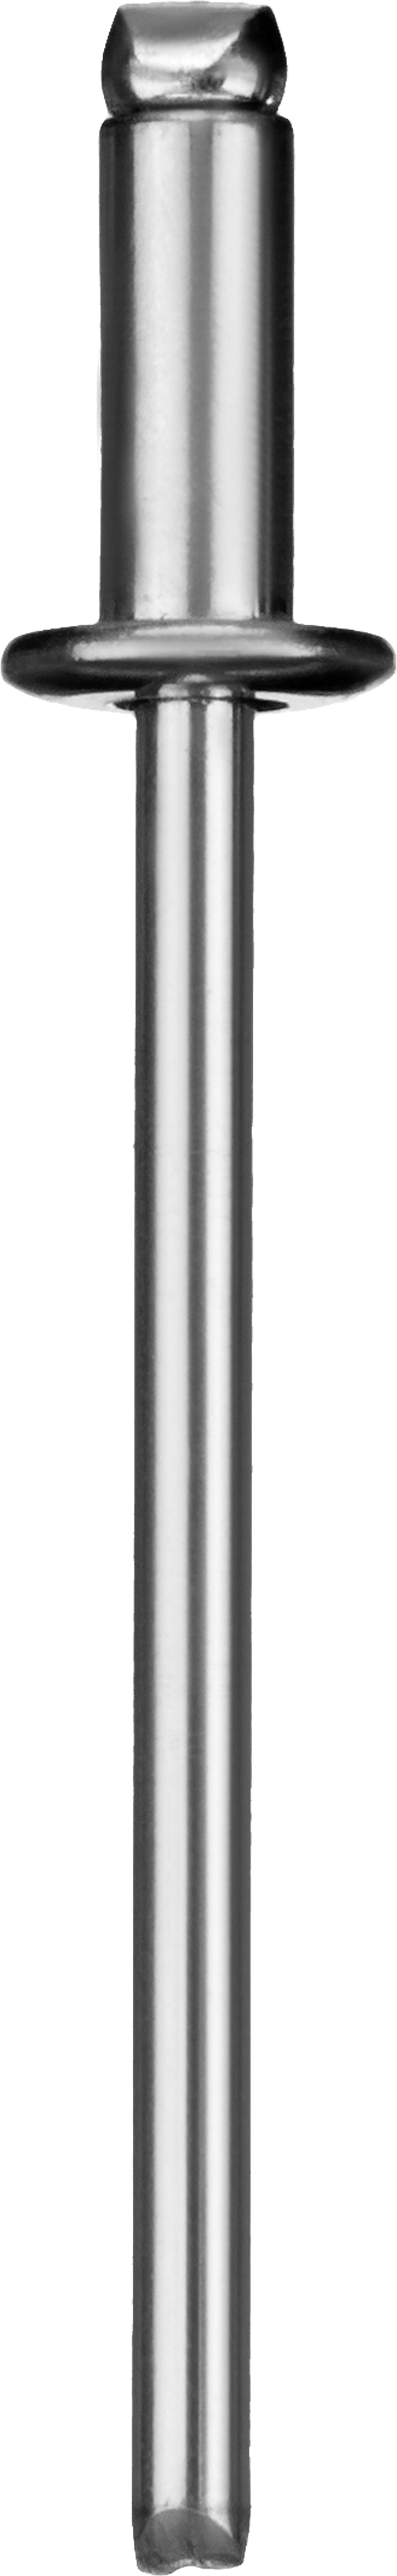 Заклепки вытяжные Зубр Профессионал, ⌀ 3.2 мм длина гильзы 8 мм, алюминий, 50 шт. (313106-32-08)